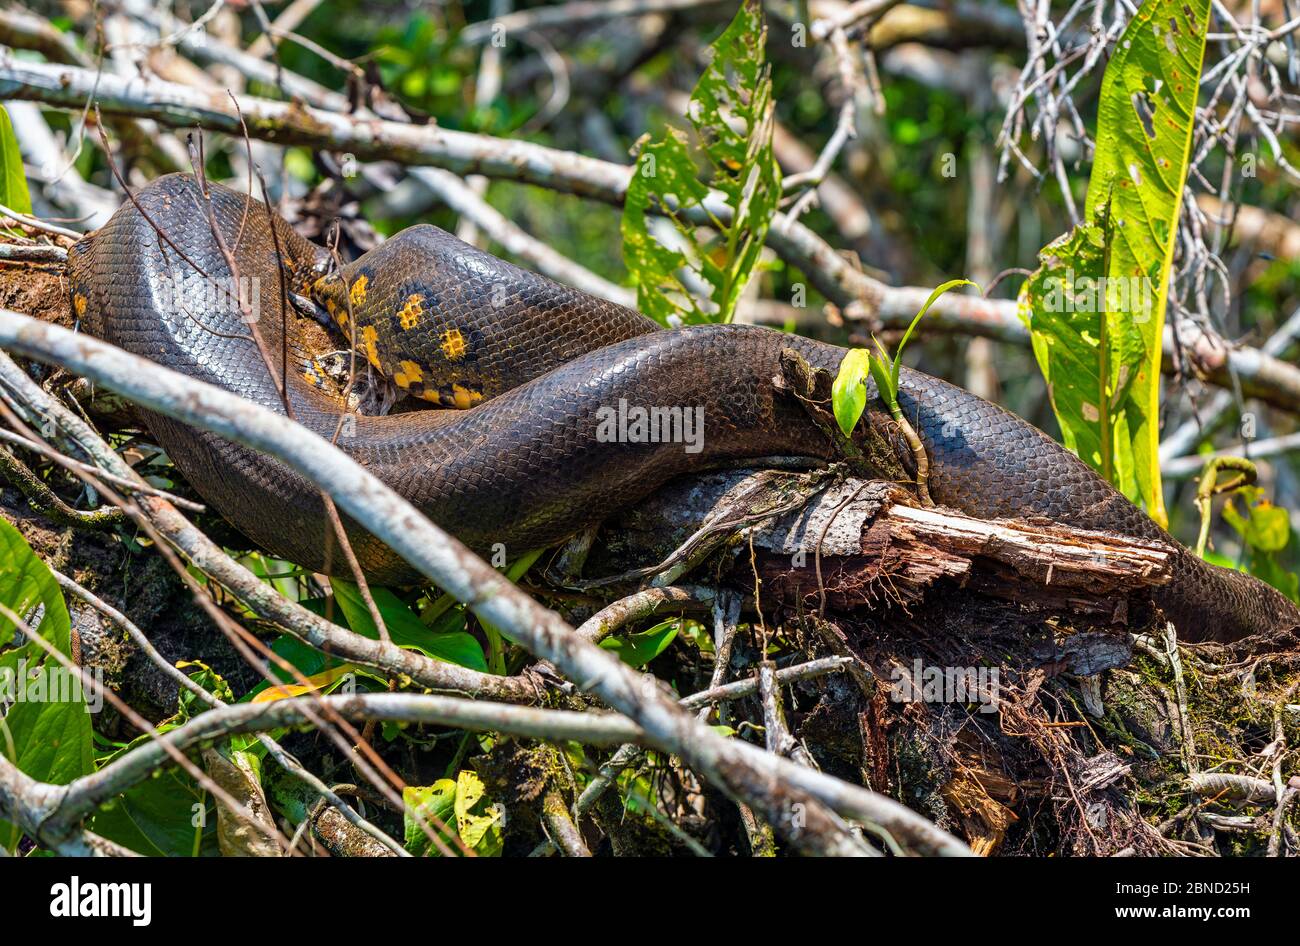 A 5 meters long Giant Anaconda (Eunectes murinus) hiding in the Amazon Rainforest along the Napo River, Yasuni national park, Ecuador. Stock Photo